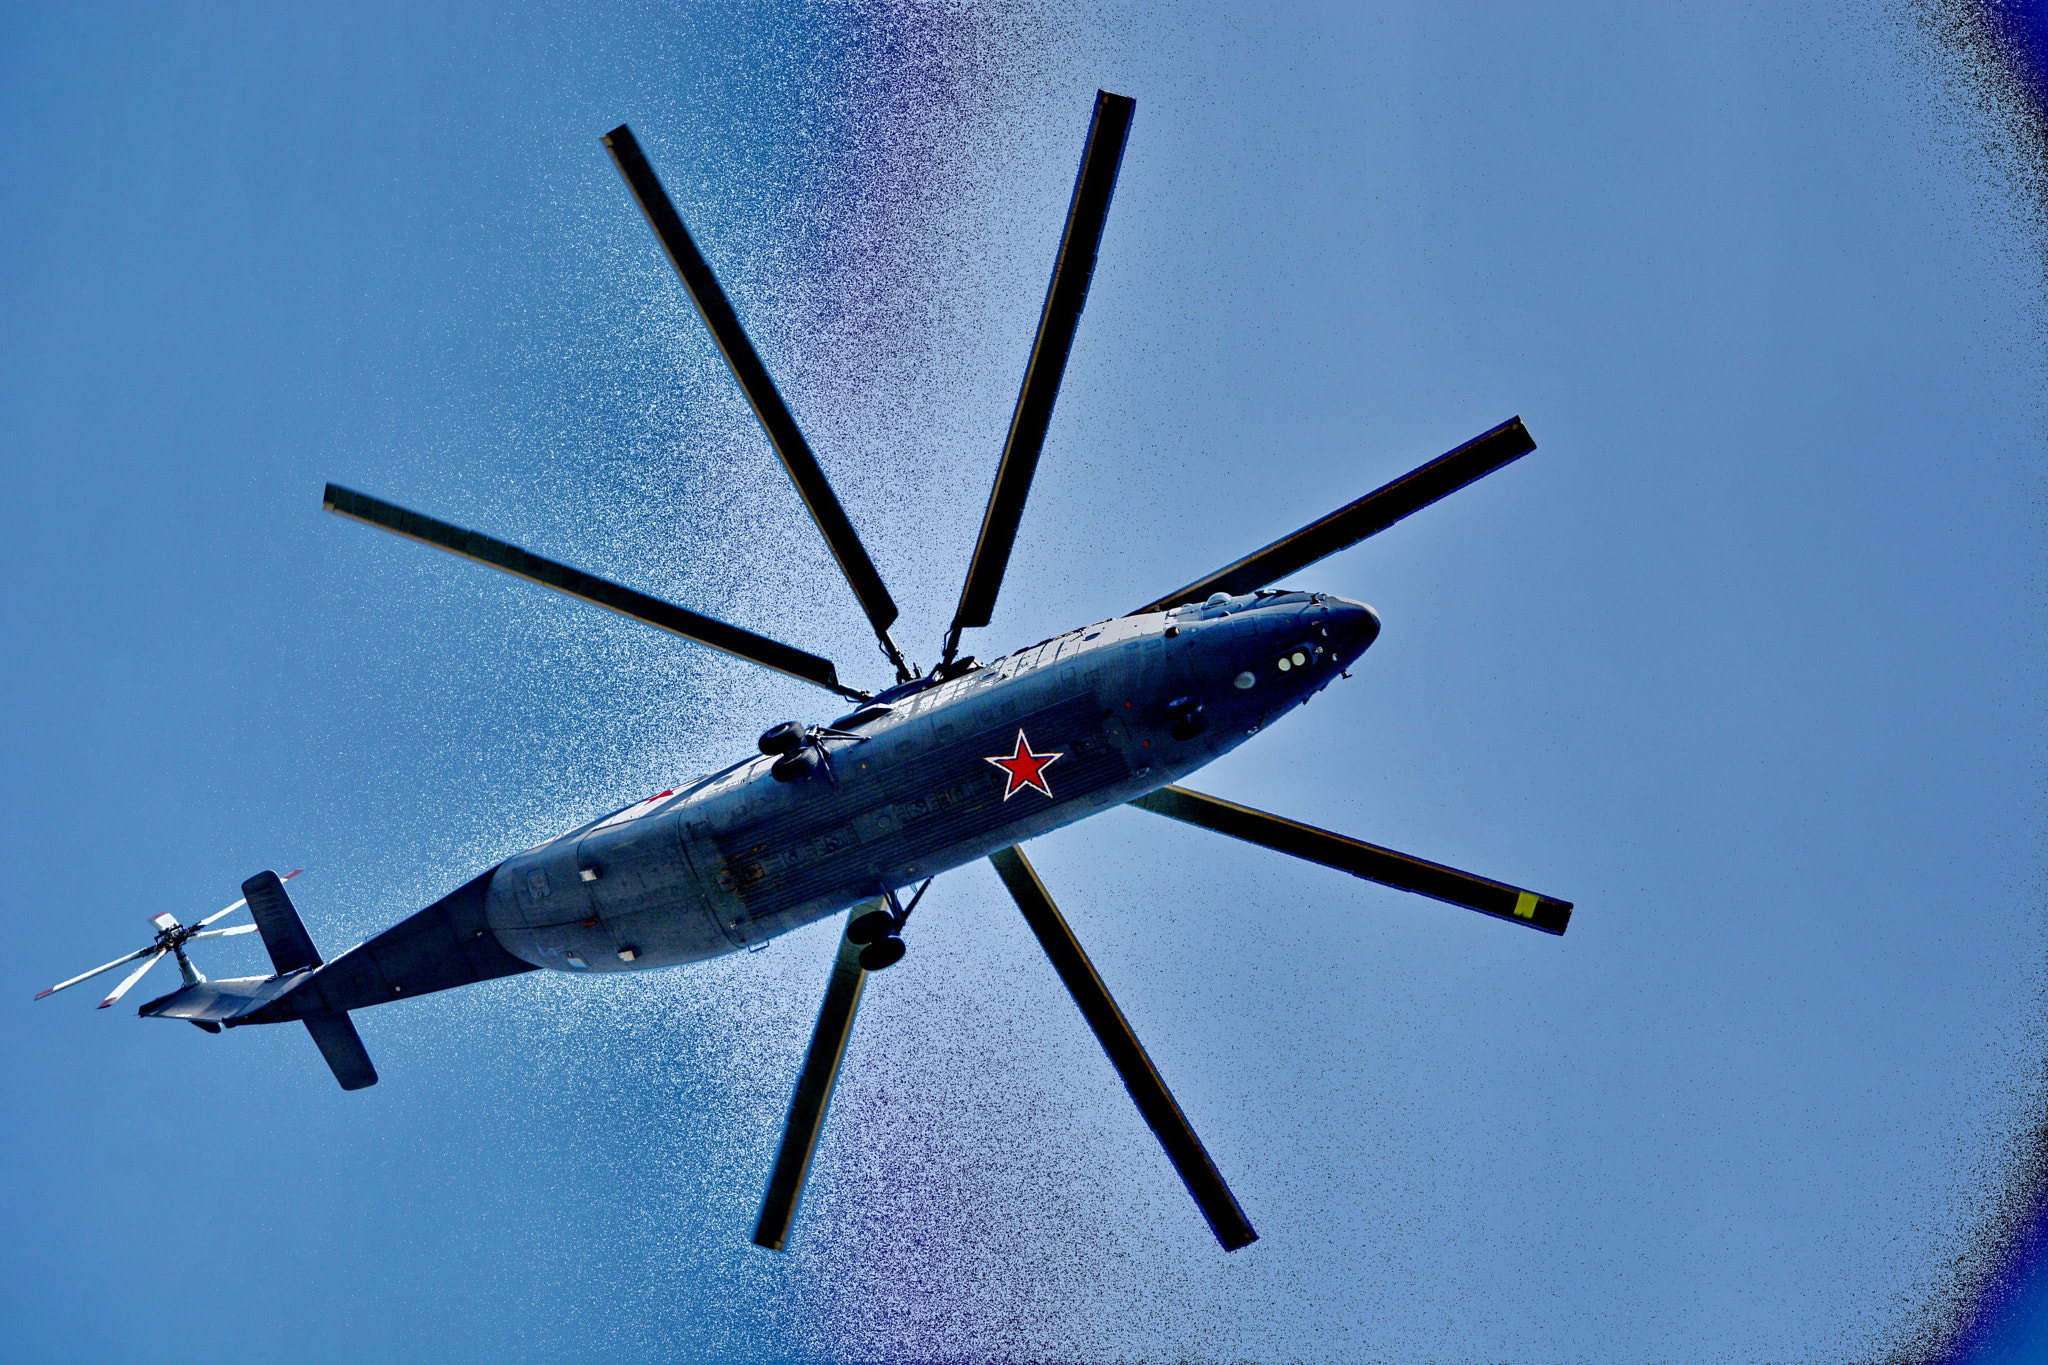 Nikon AF-S DX Nikkor 55-300mm F4.5-5.6G ED VR sample photo. Mi-26 helicopter photography